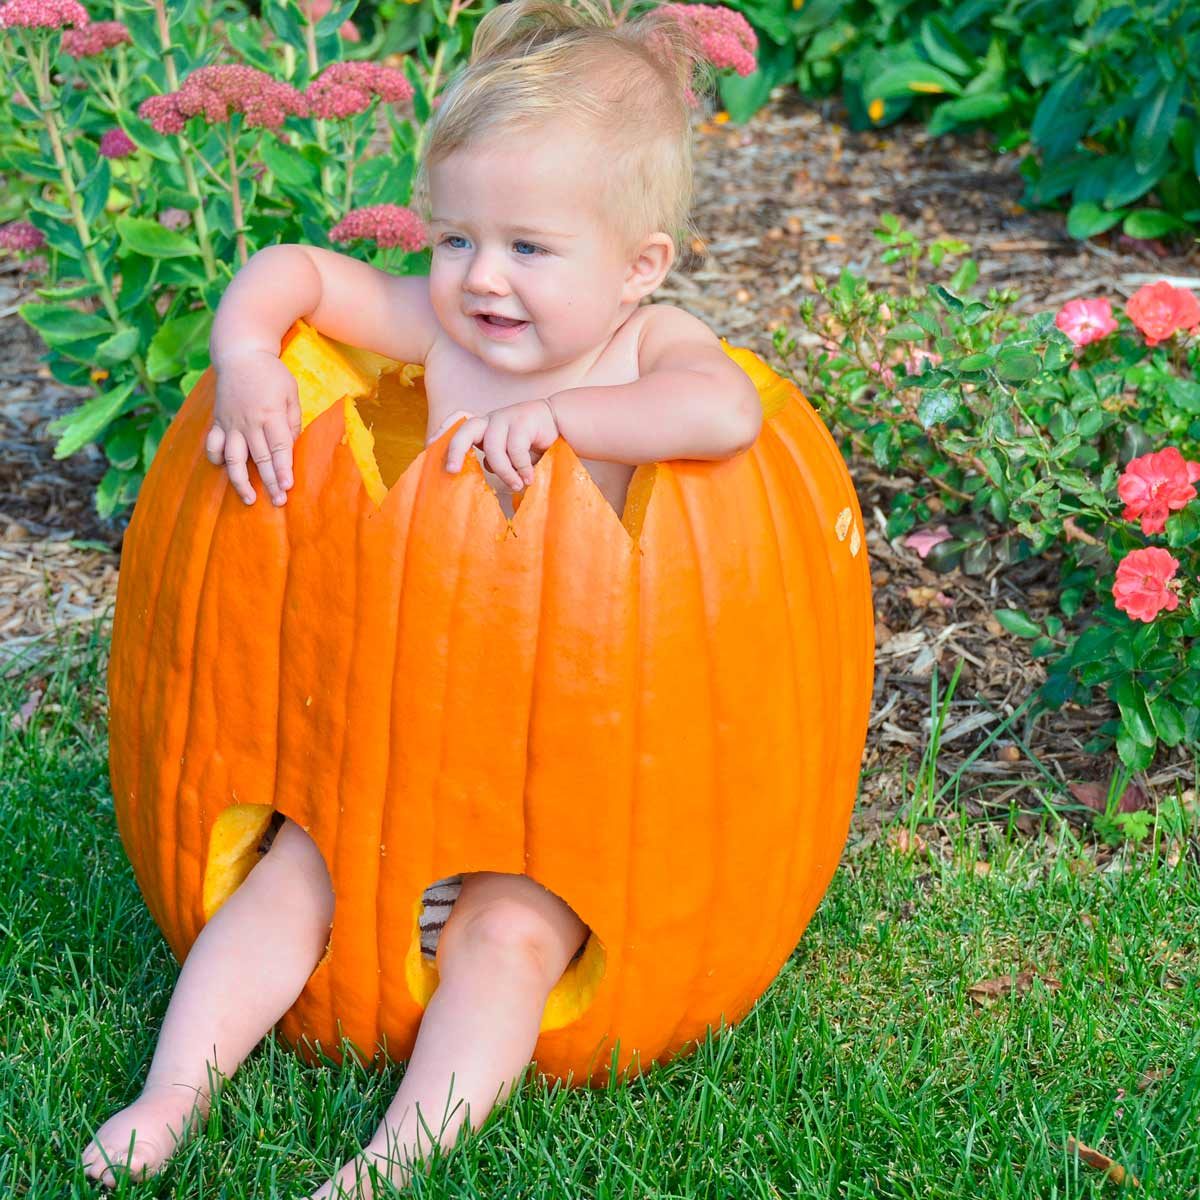 Cute Baby Pumpkin Carving Ideas